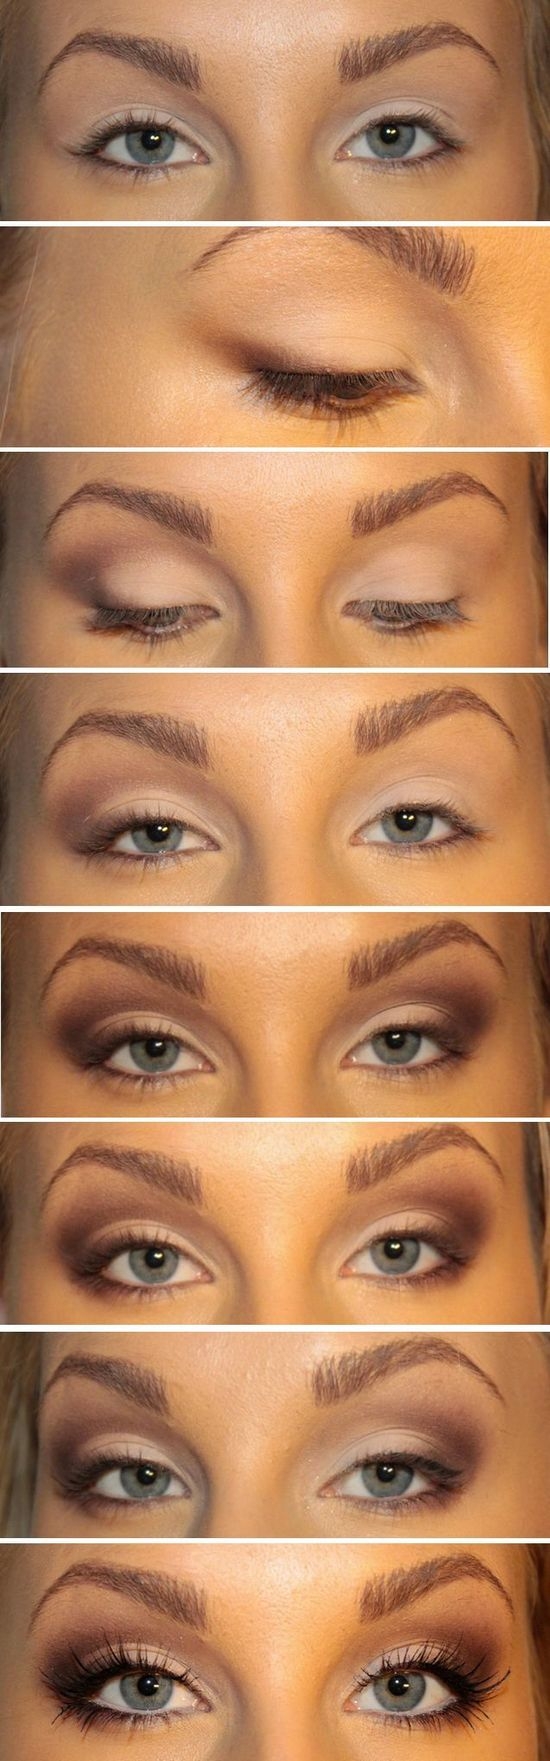 Как увеличить с помощью макияжа глаза: пошагово, фото до и после
как увеличить глаза с помощью макияжа: главные секреты — модная дама